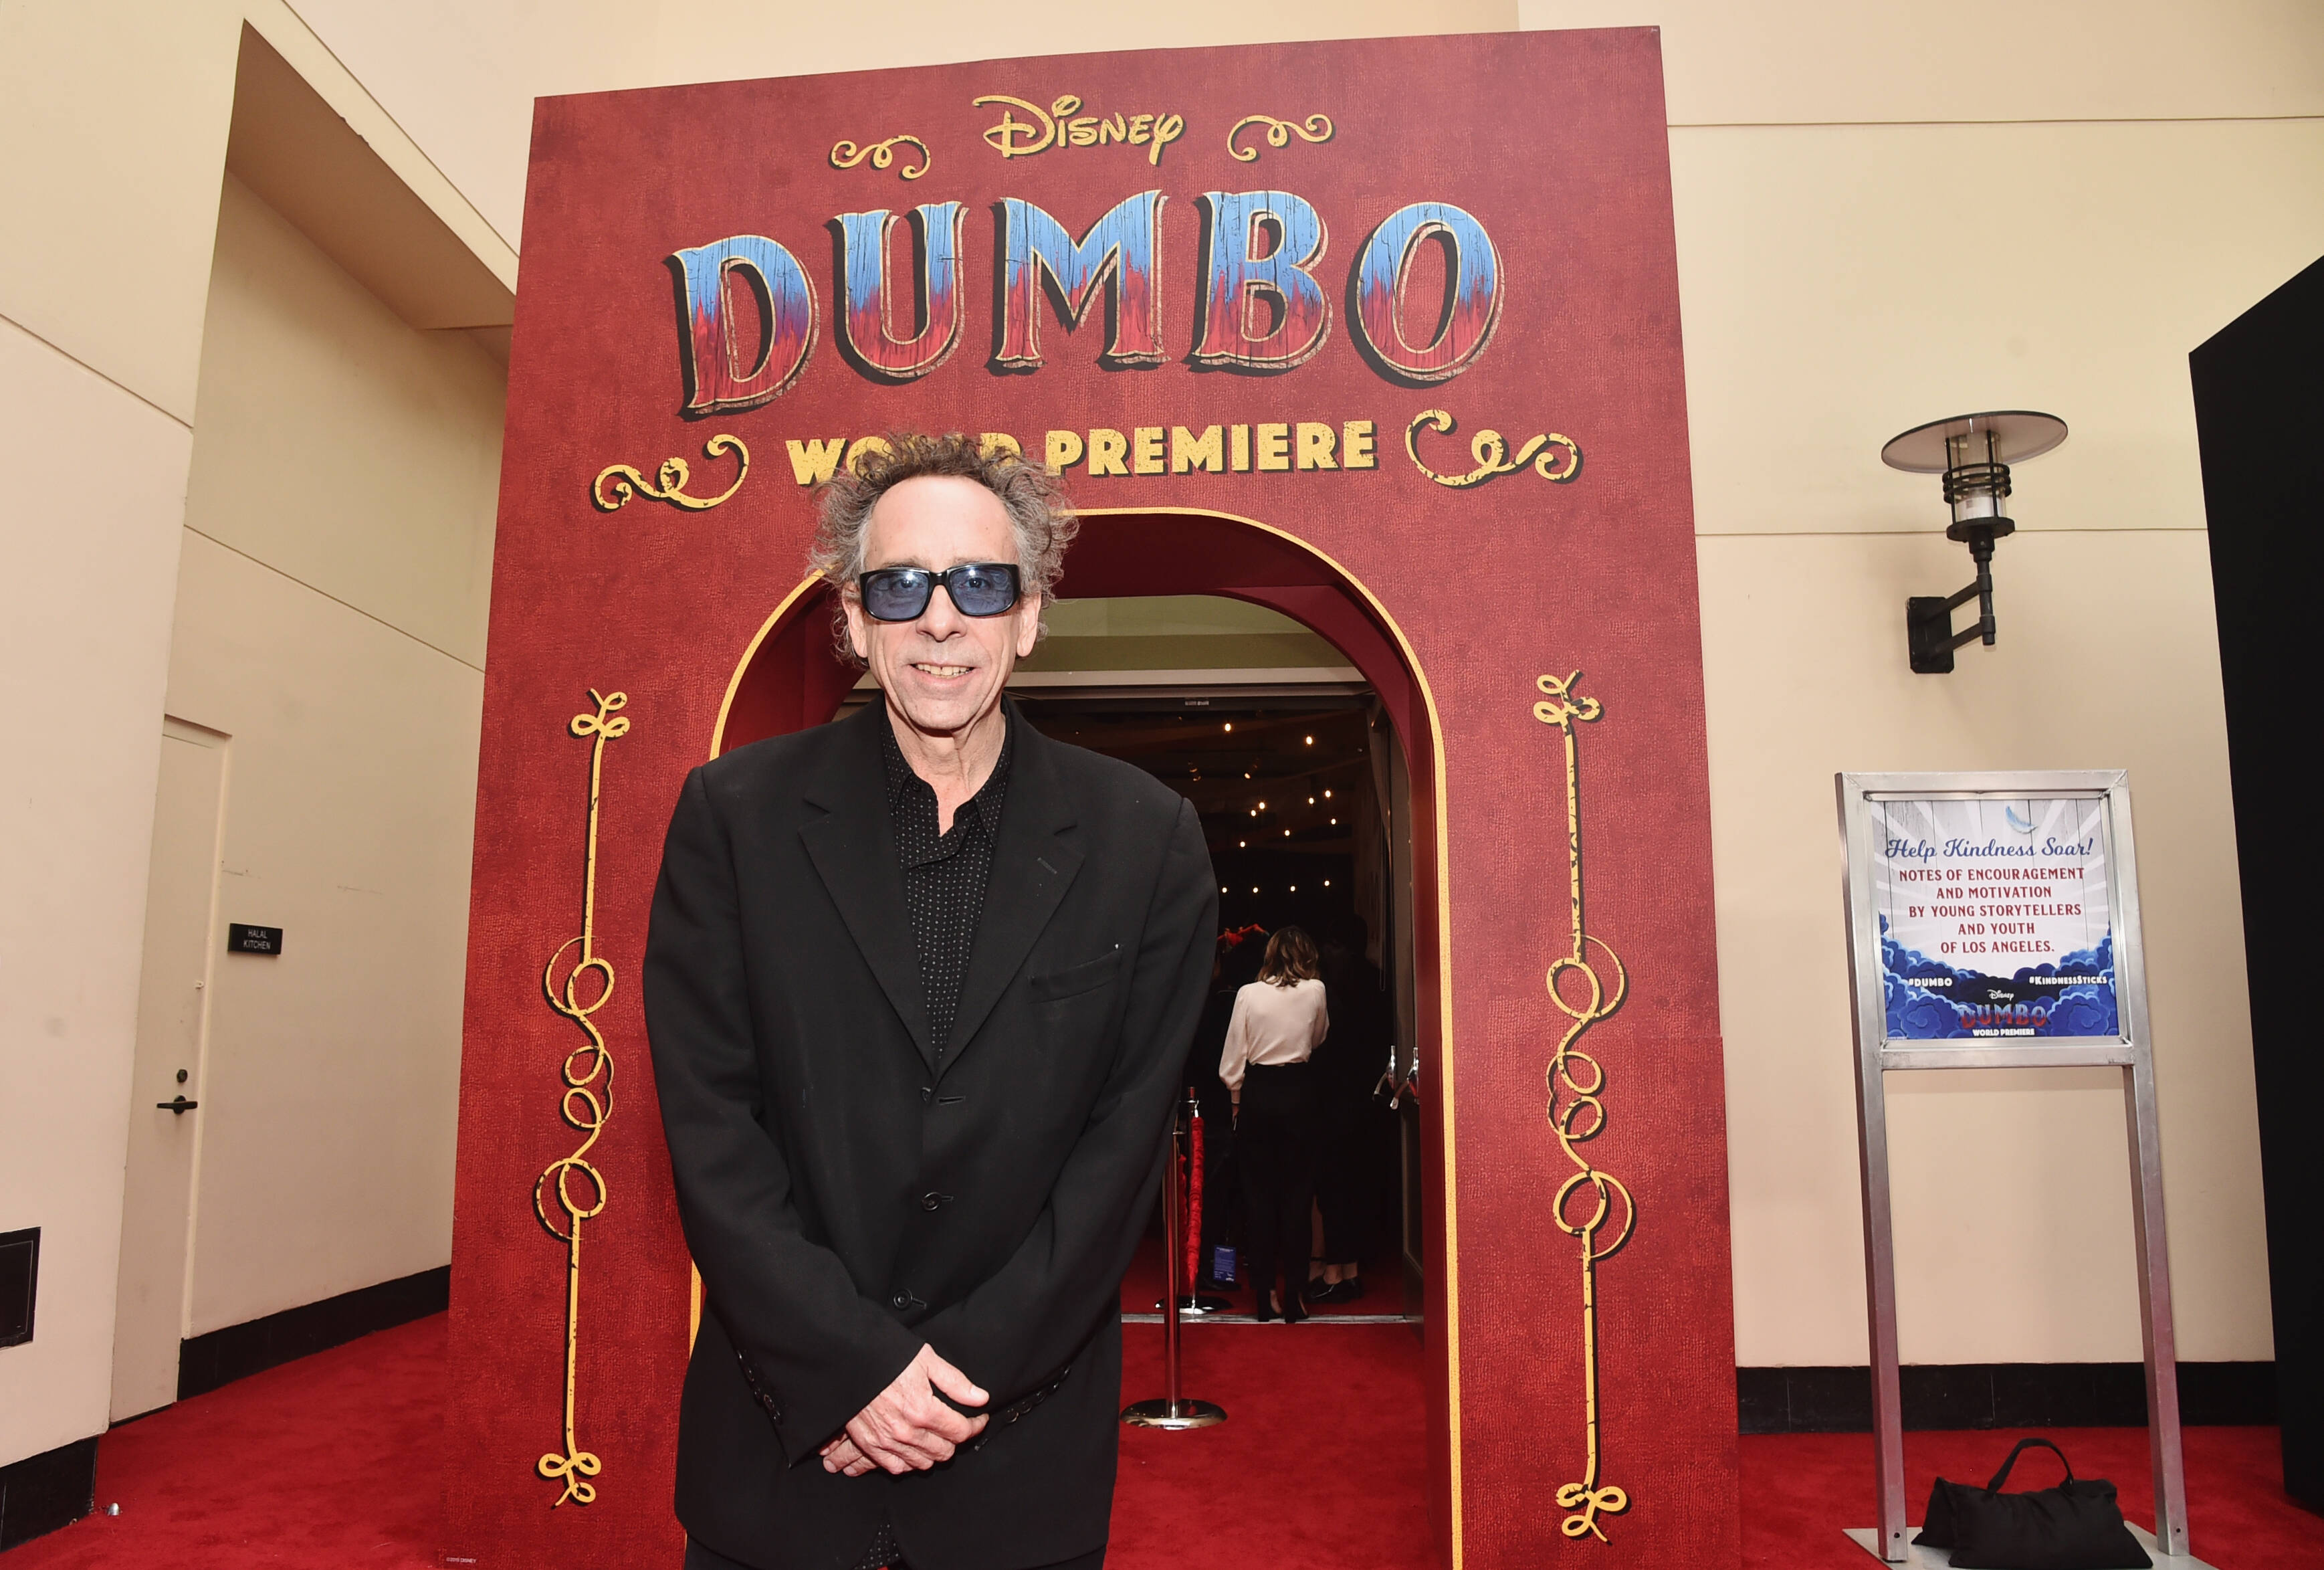 Famosos comparecem a première de "Dumbo". Foto: Divulgação / Disney